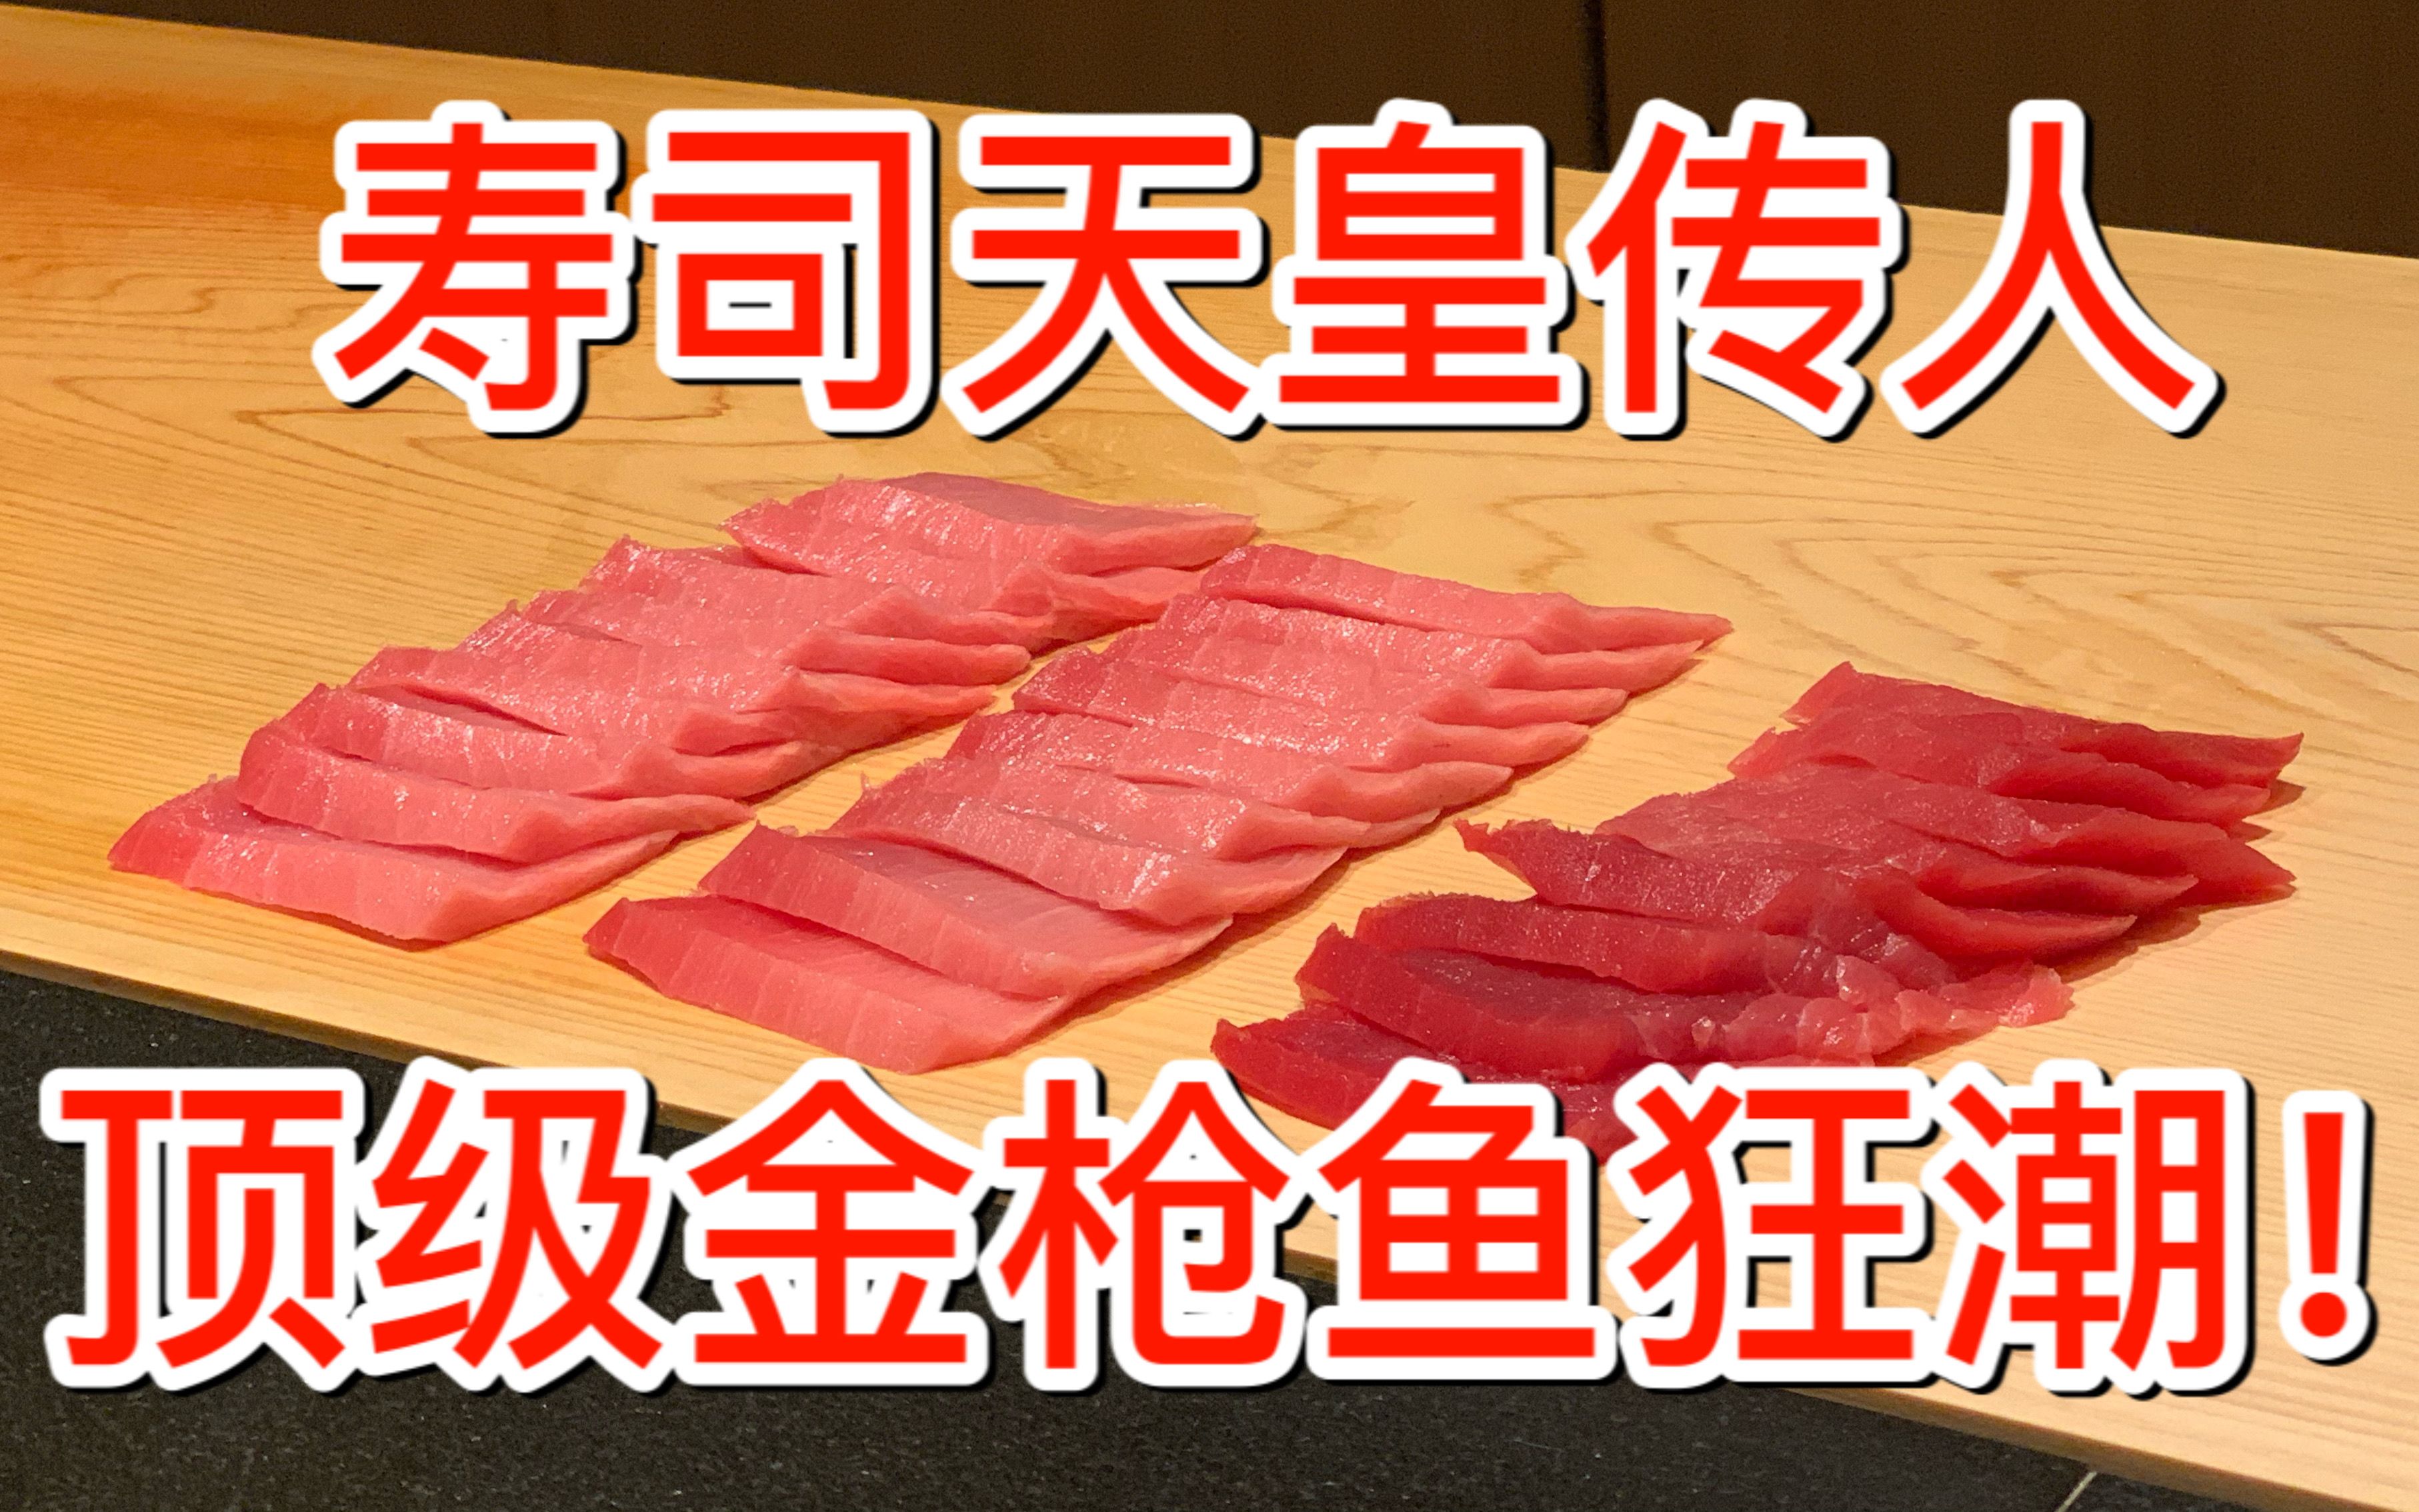 【食酒vlog.54】花2200在日本米其林寿司店被金枪鱼狂潮击倒